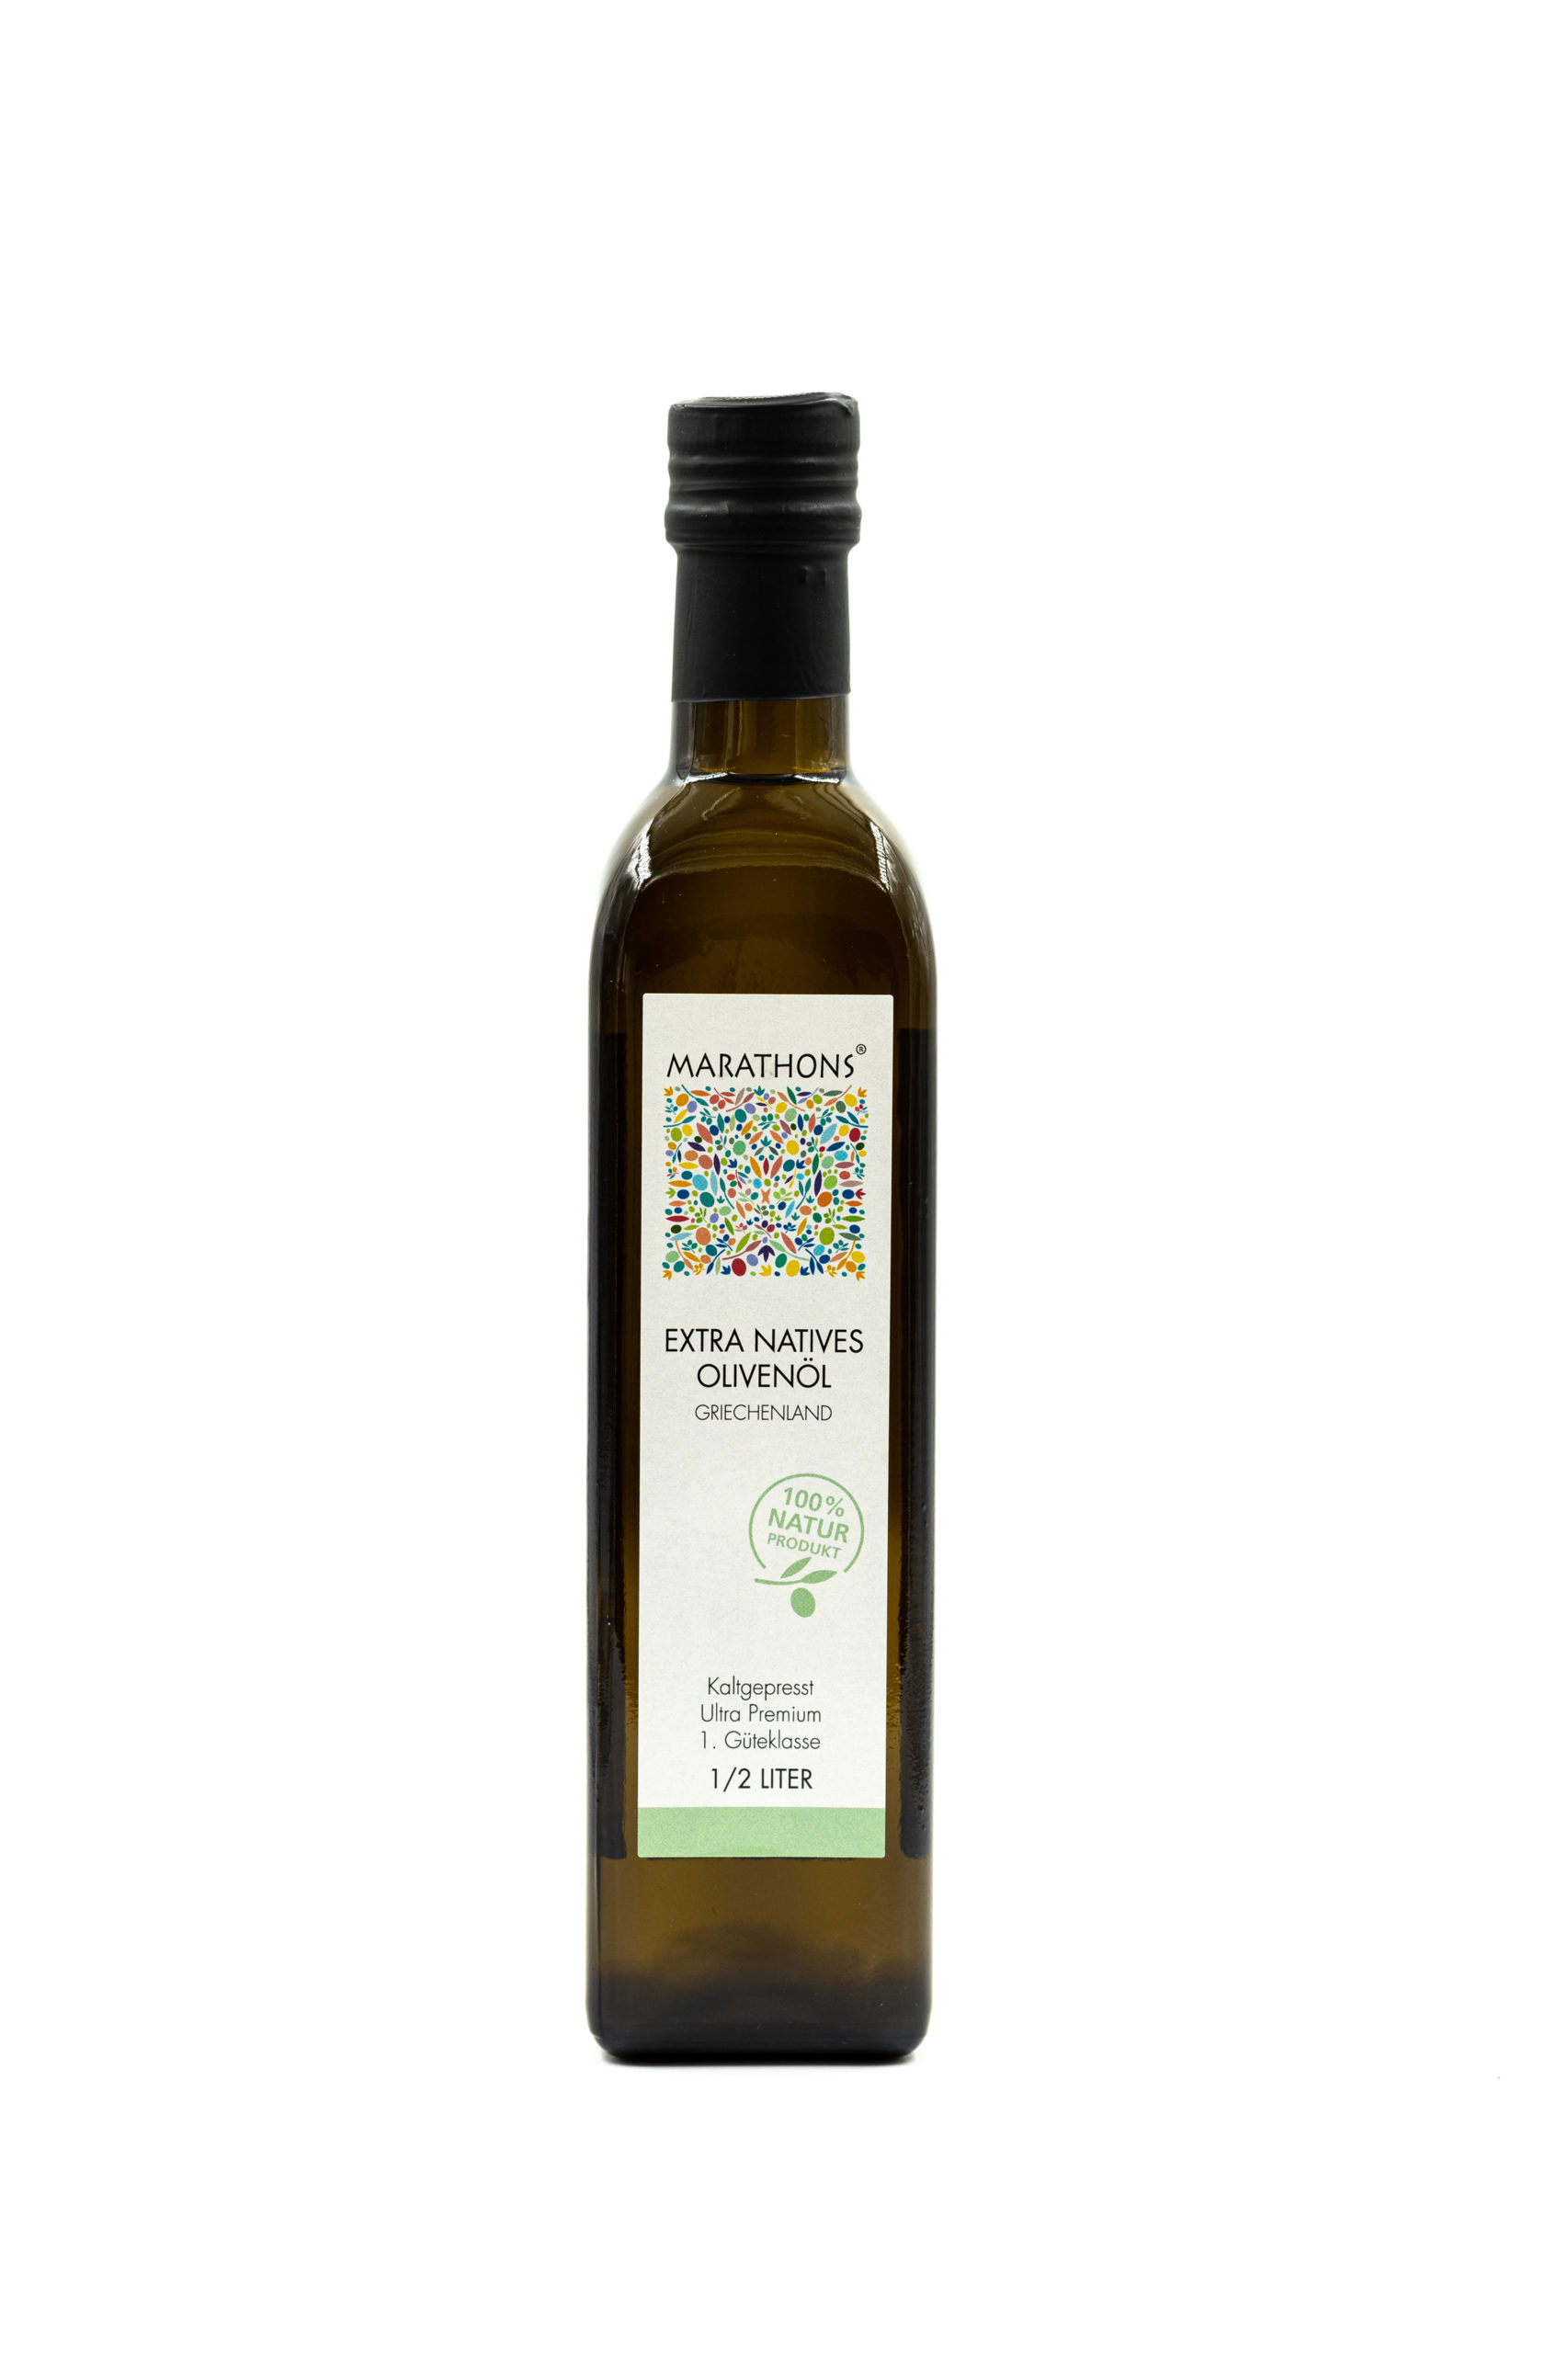 Flacon pour huile d'olive en portion de 100 ml, en verre